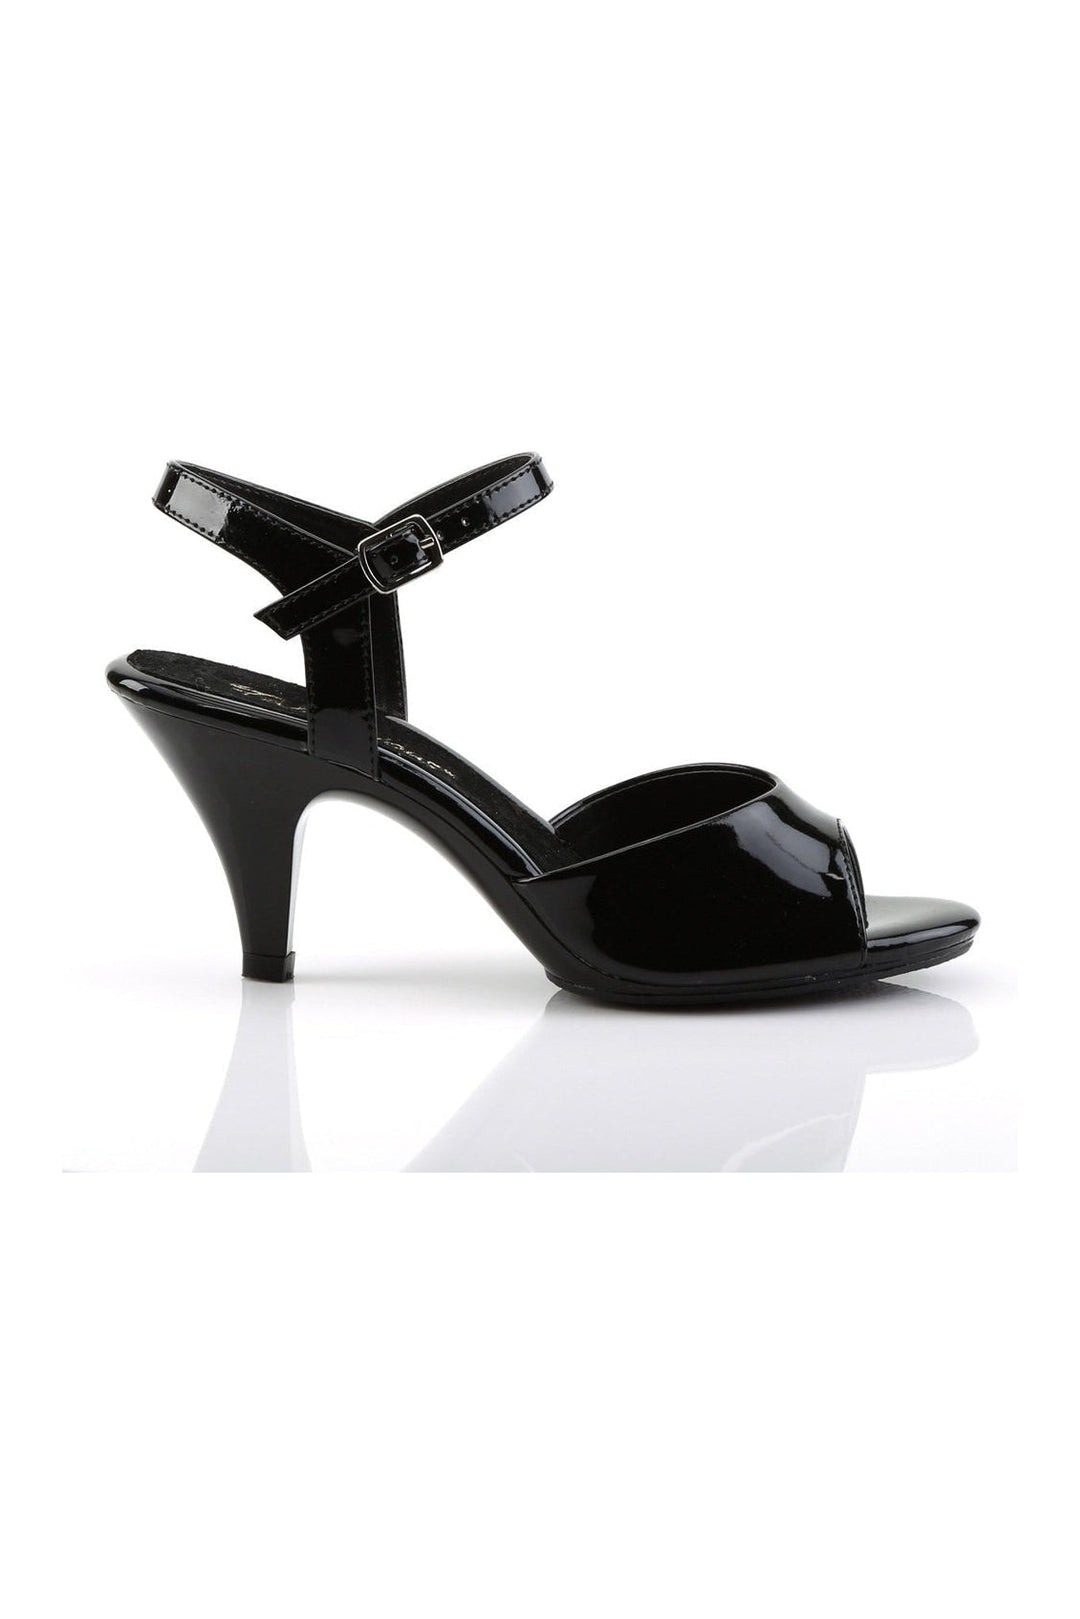 BELLE-309 Sandal | Black Patent-Fabulicious-Sandals-SEXYSHOES.COM